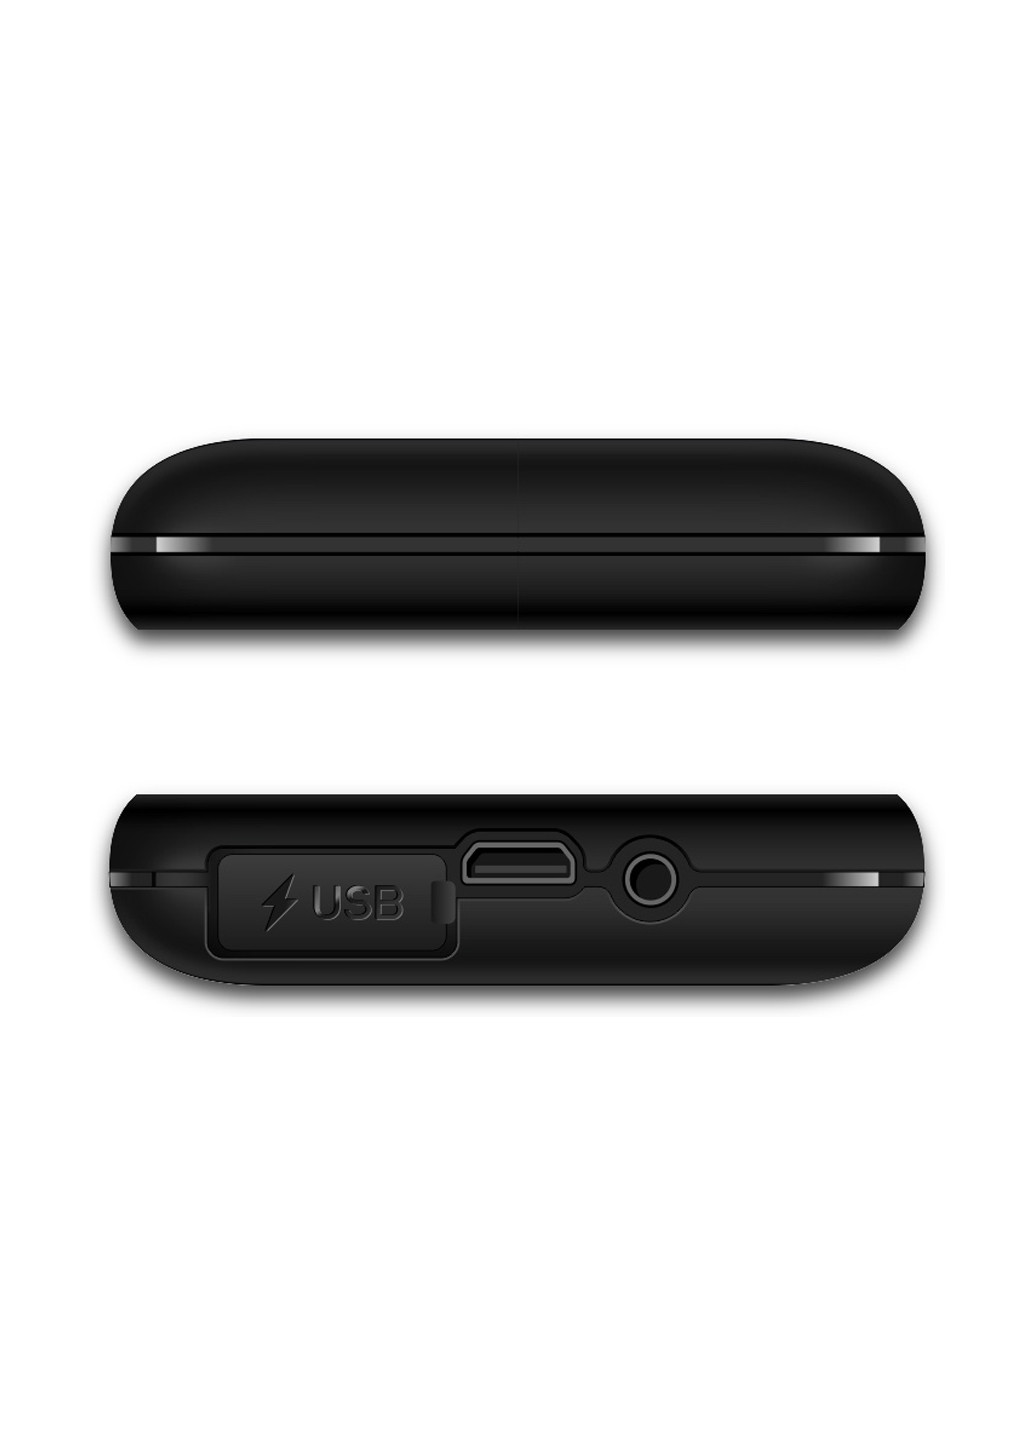 Мобільний телефон Sigma mobile x-style 31 power black (130940045)